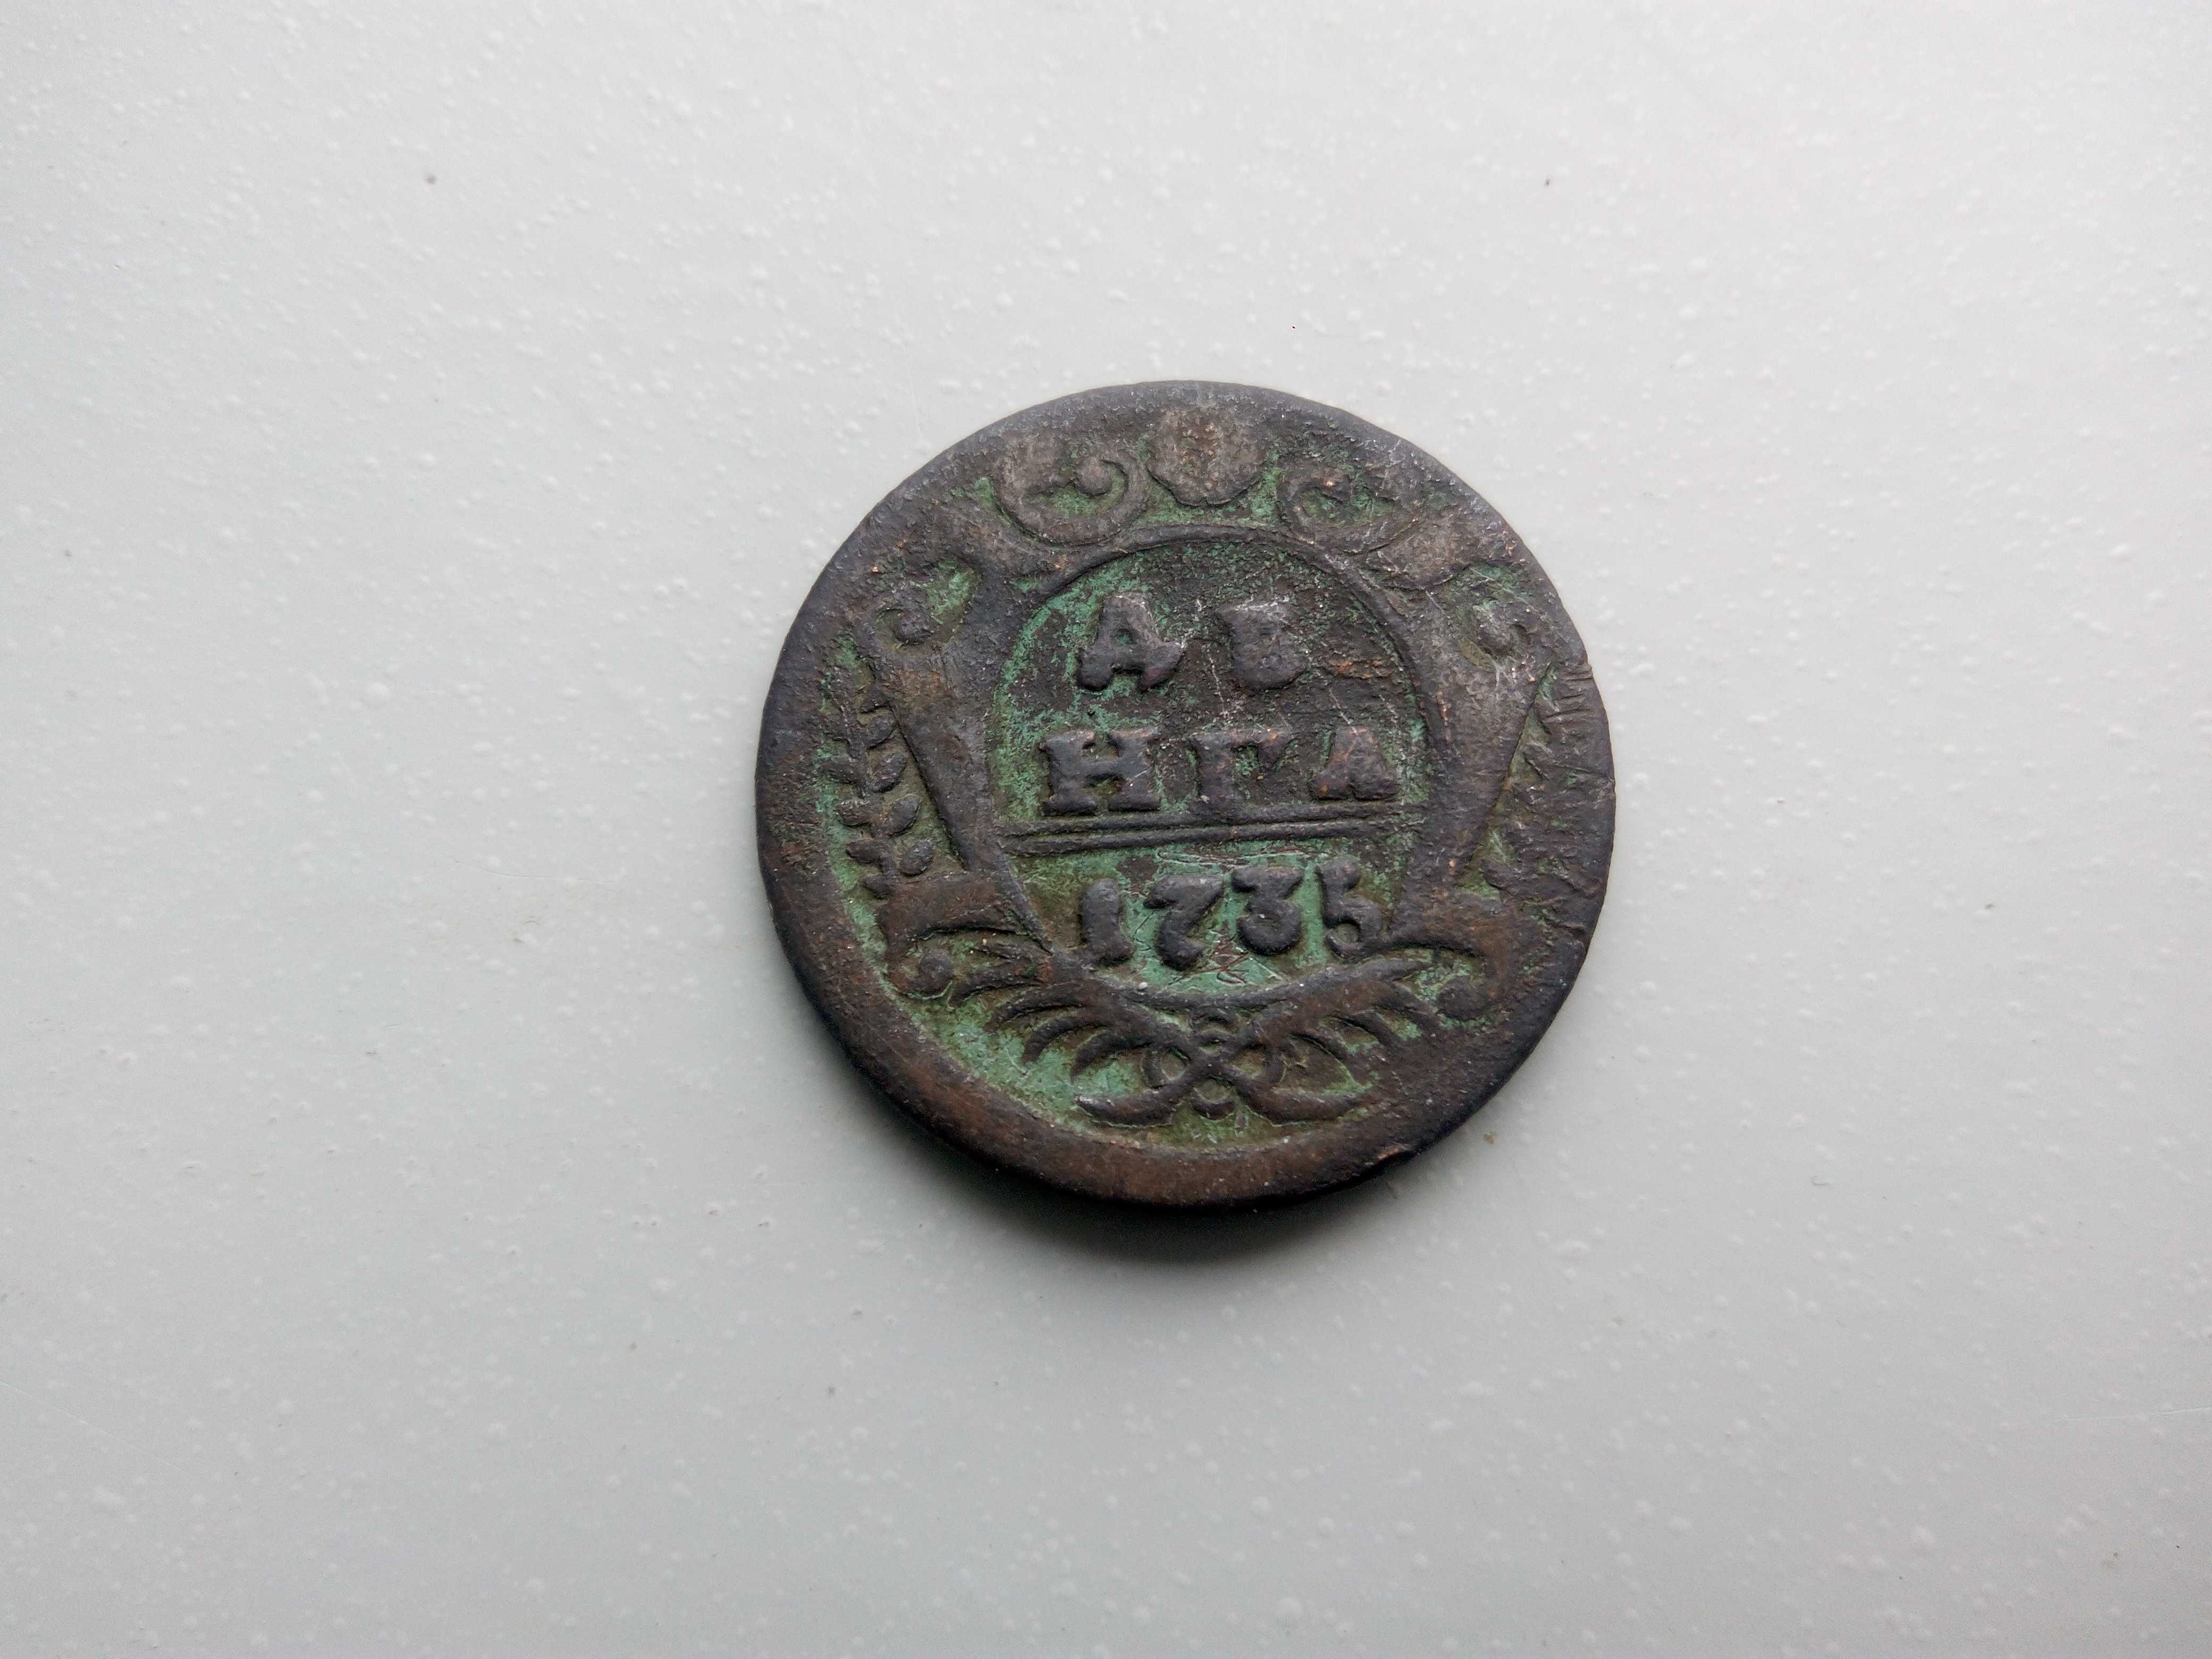 Денга 1735 года царська монета